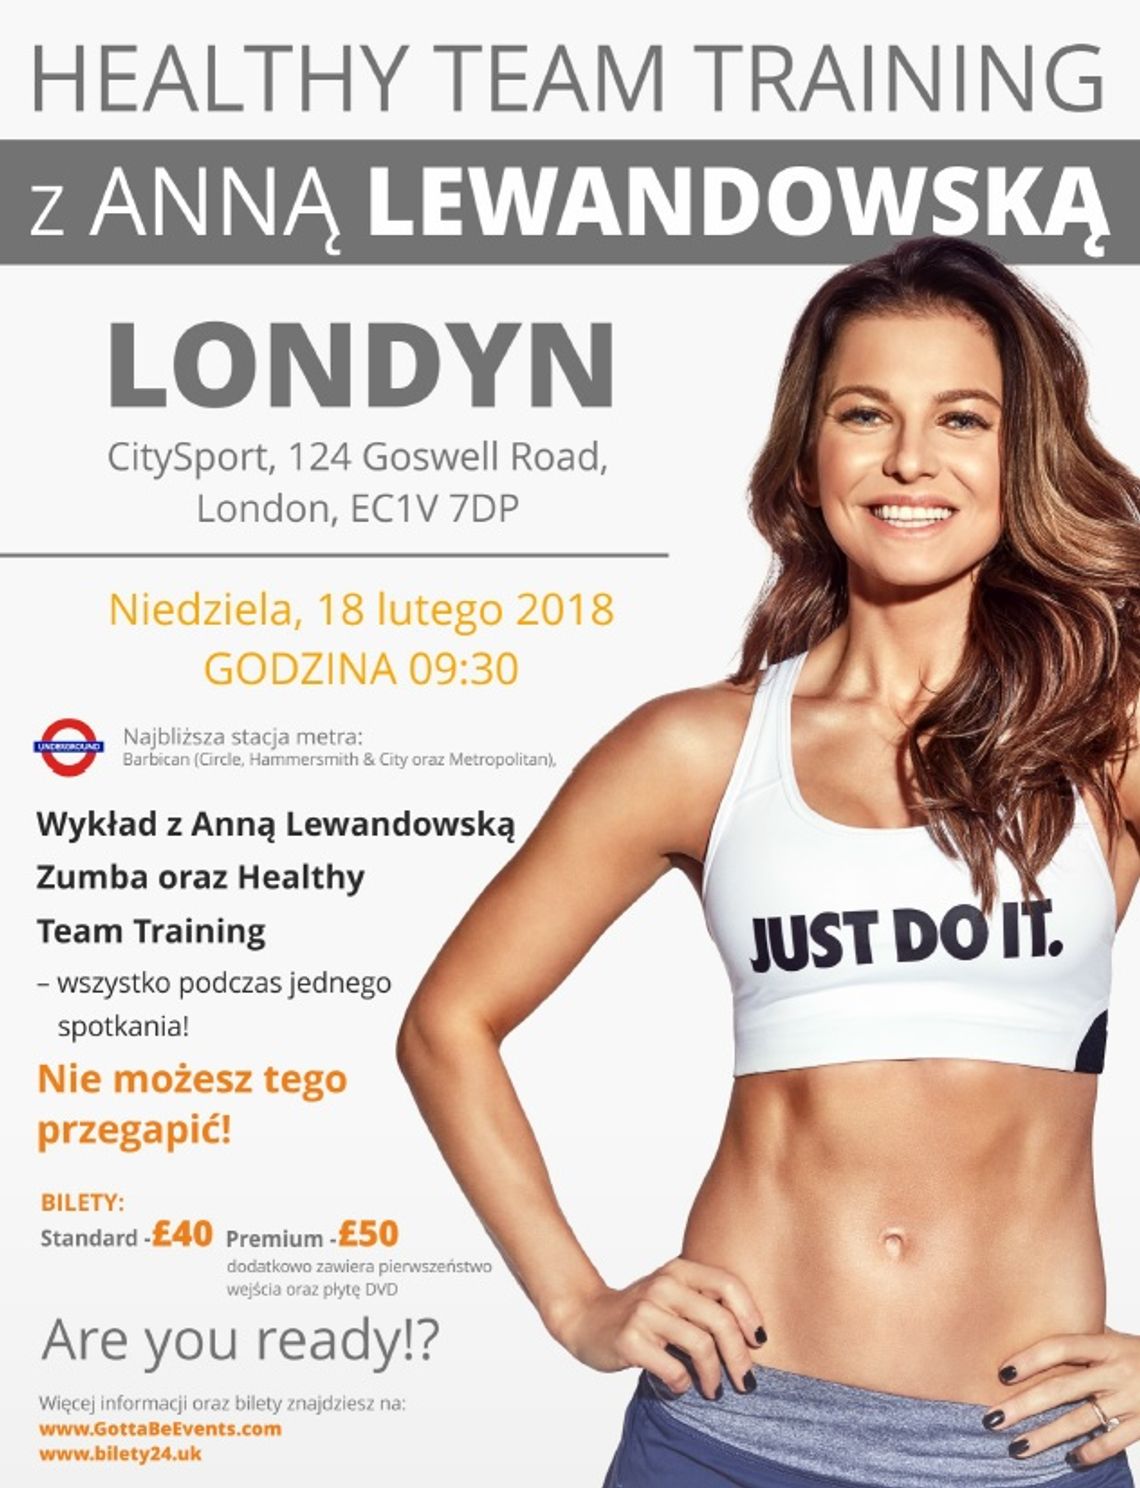 Healthy Team Training z Anną Lewandowską